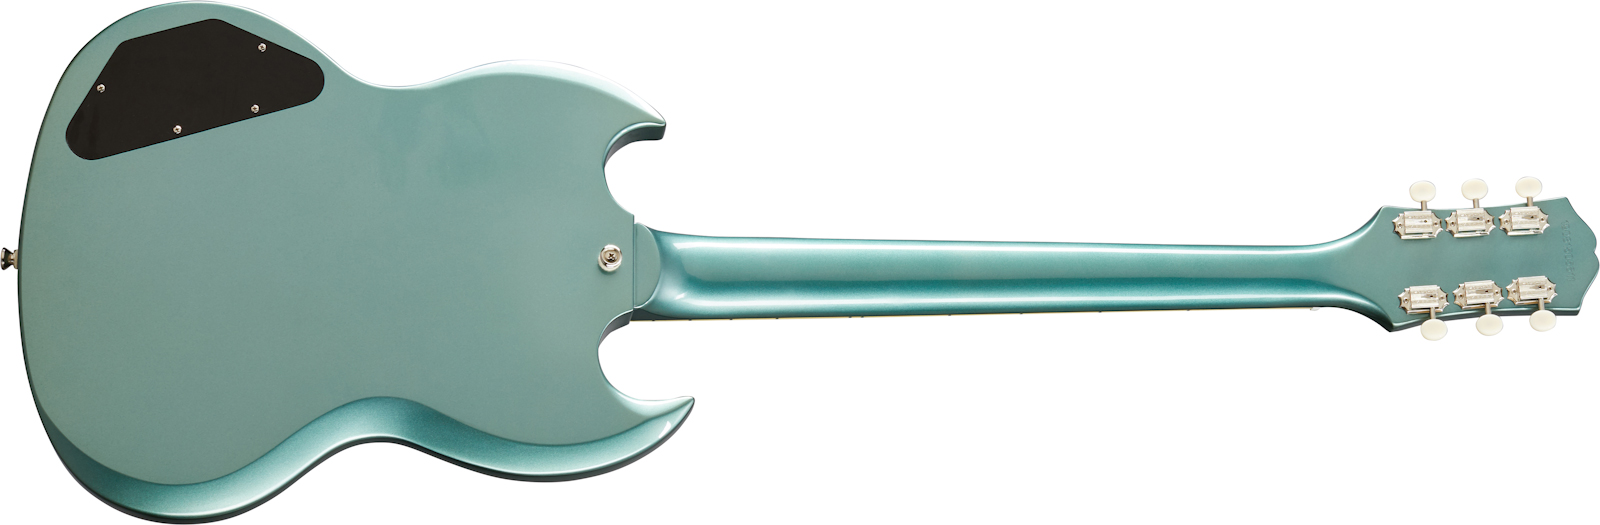 Epiphone Sg Special 2s P90 Ht Lau - Faded Pelham Blue - Guitarra eléctrica de doble corte. - Variation 1